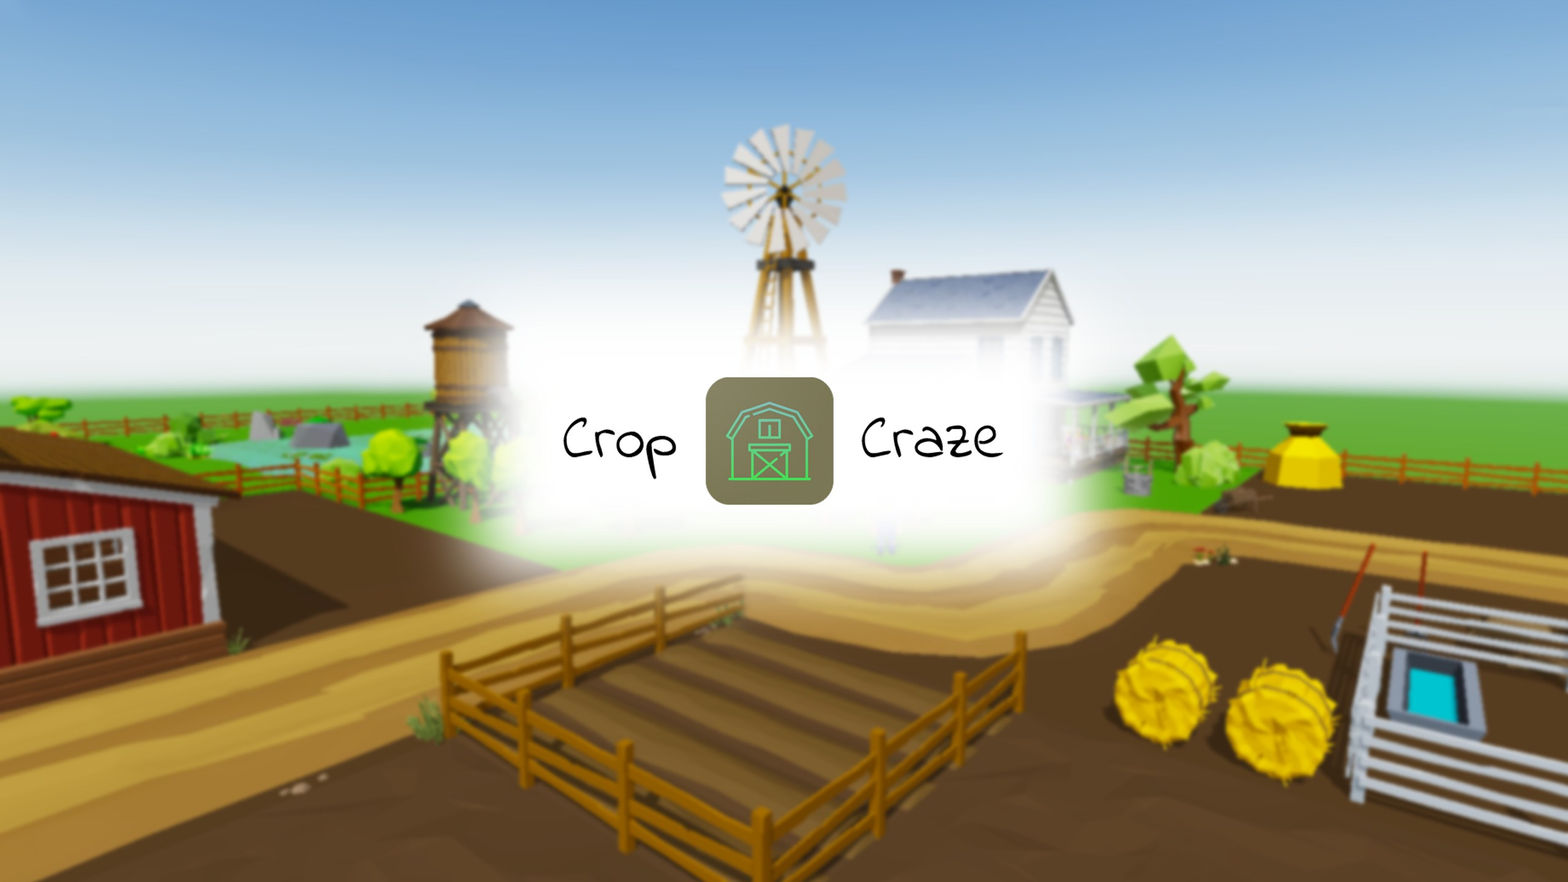 Crop Craze